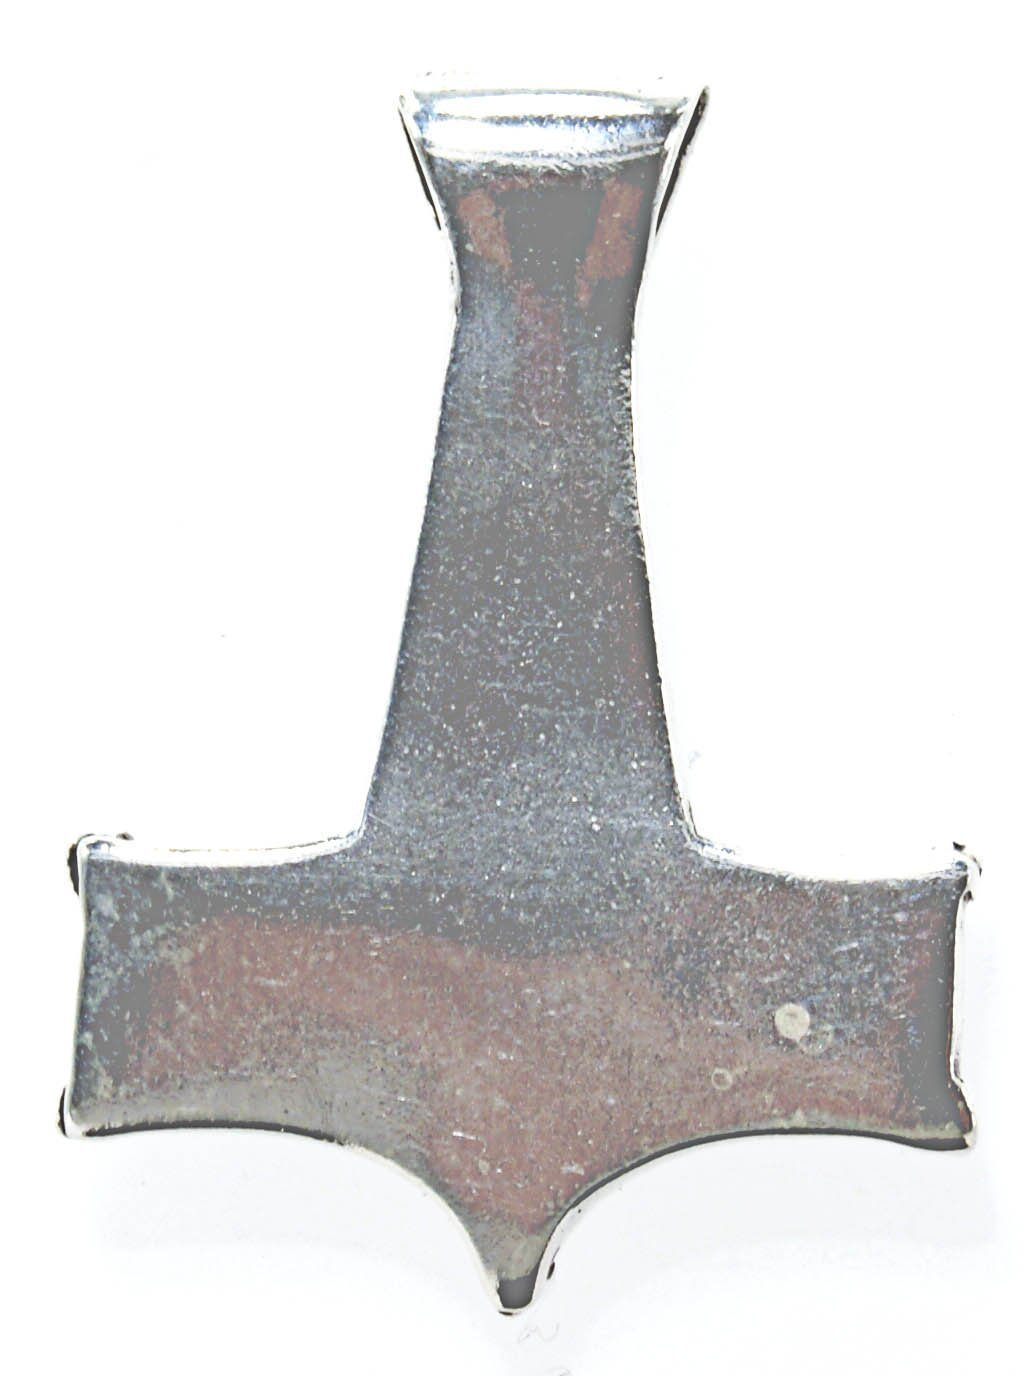 Königskette mm of Midgardschlange Kette mit 3 Thorhammer Anhänger Thorshammer Kiss Leather